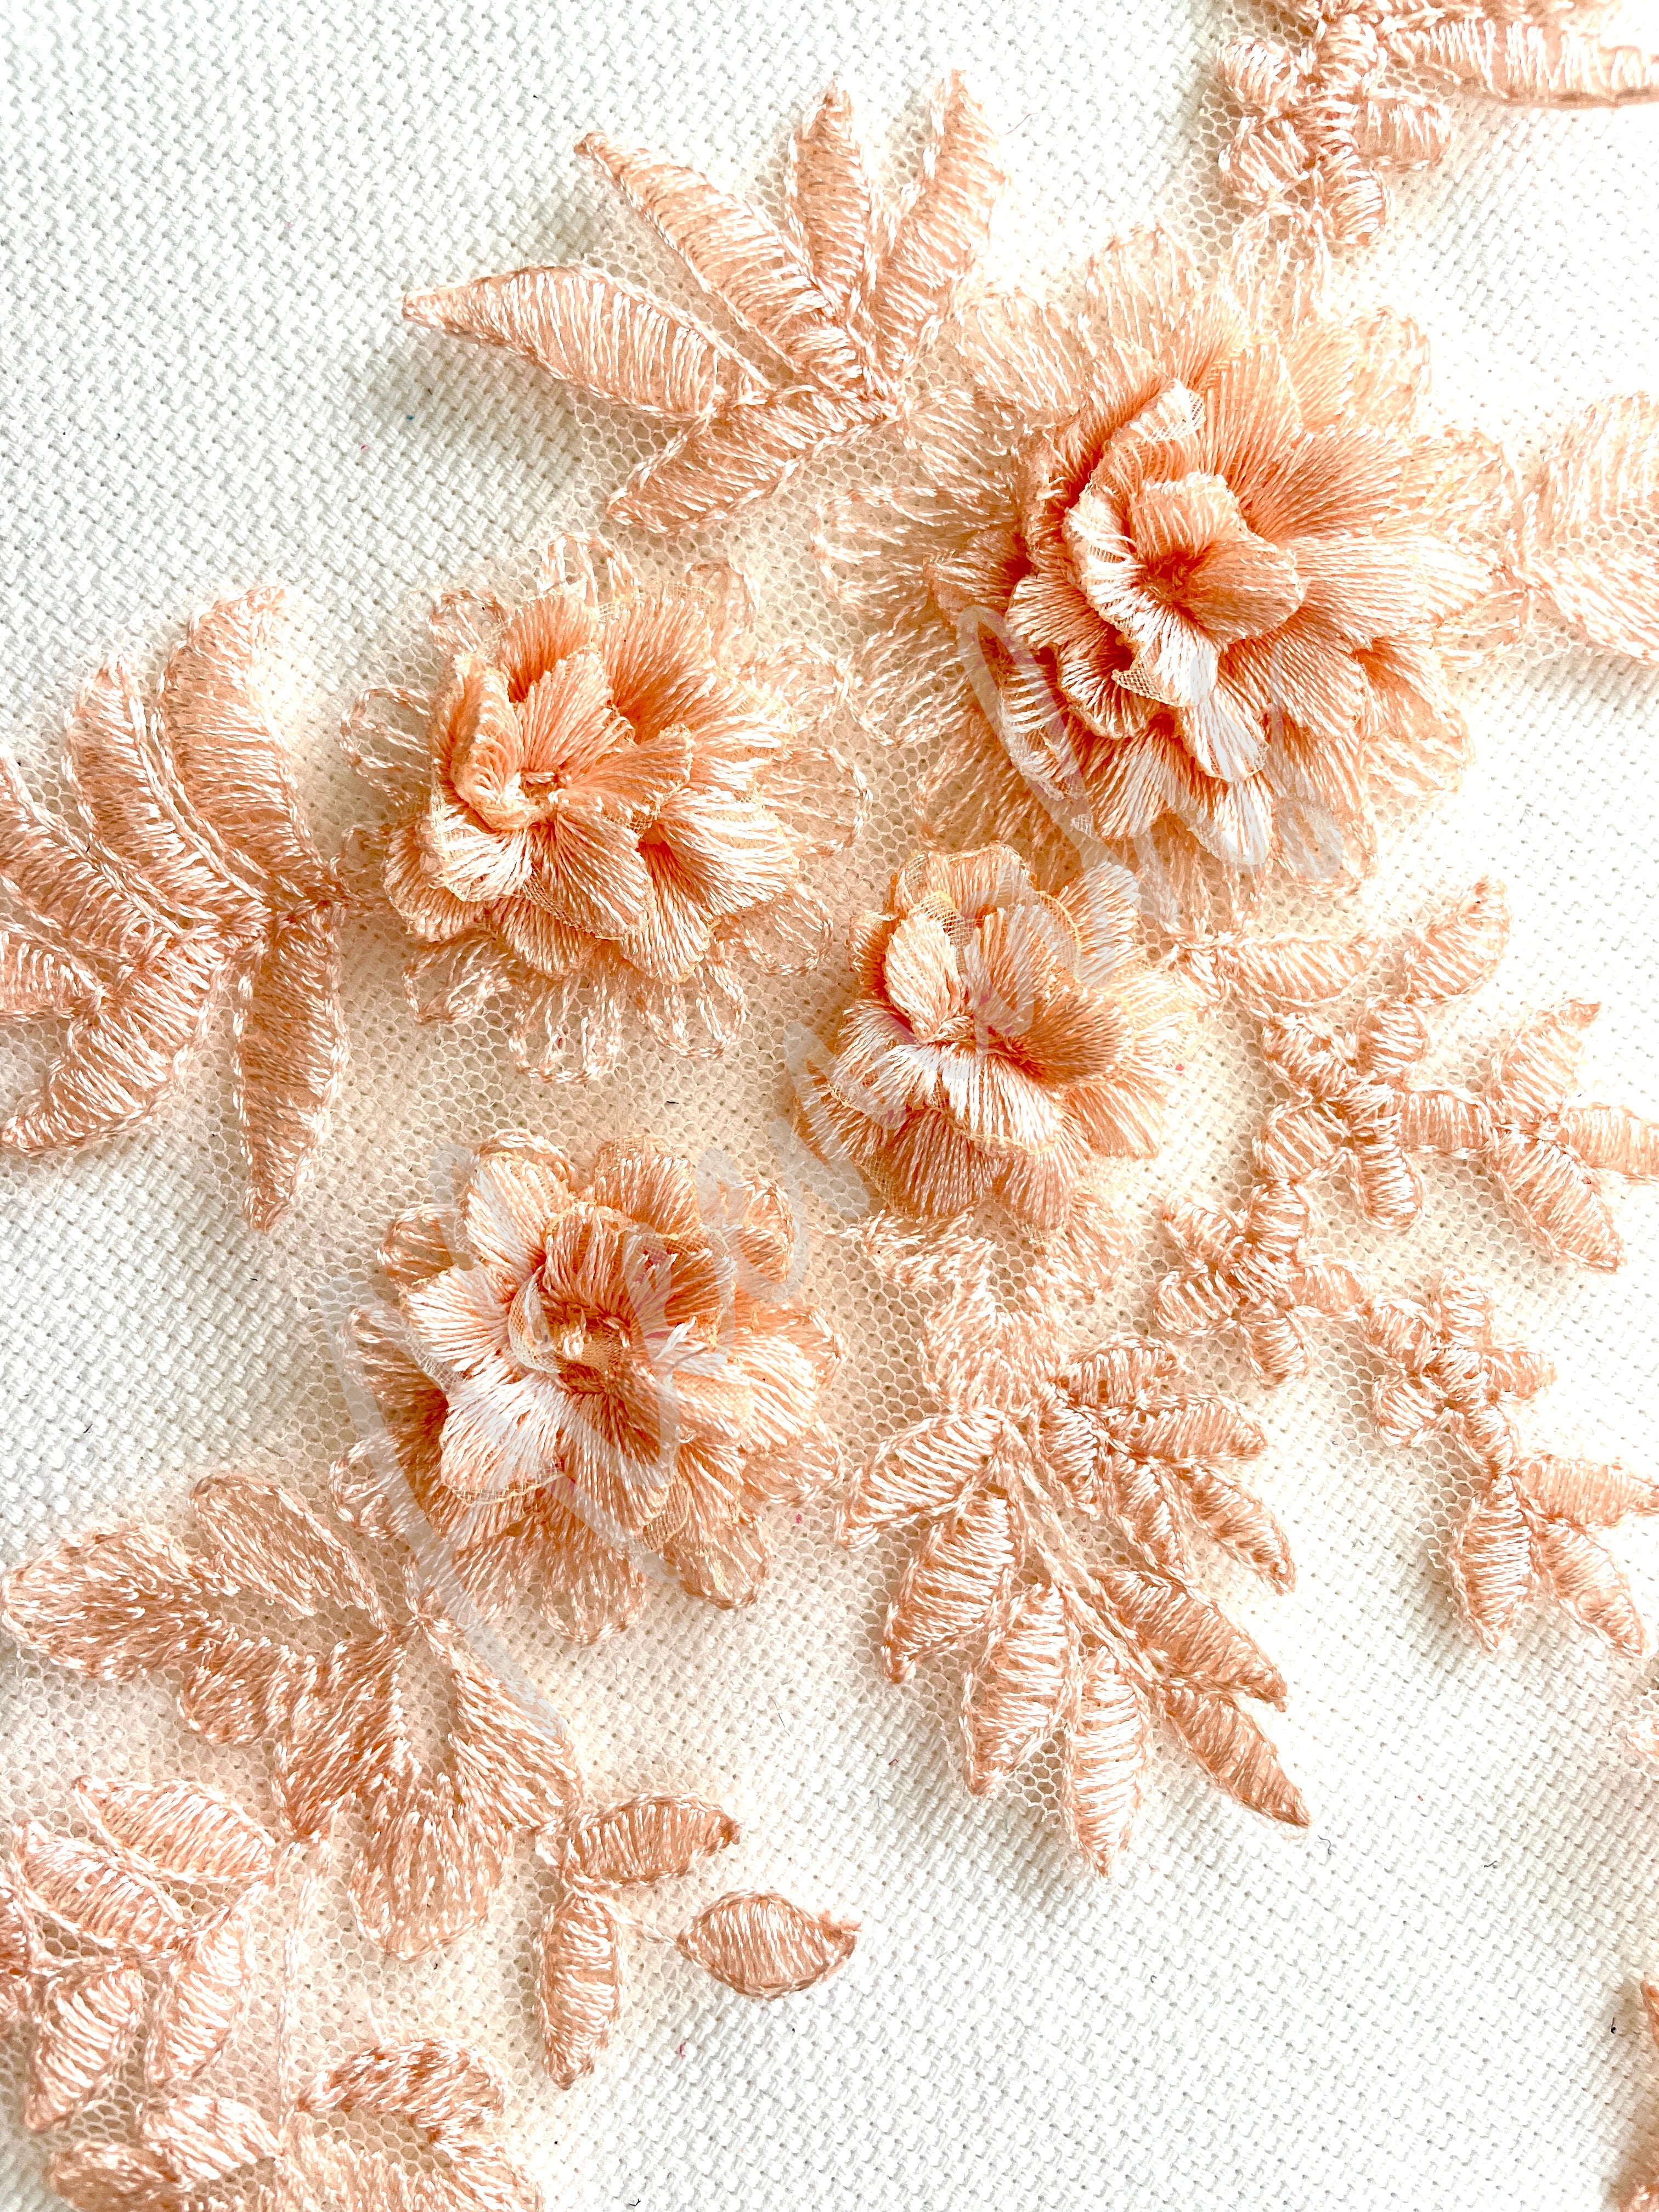 LA-033: 3D floral lace applique pair: Antique Pink/Apricot